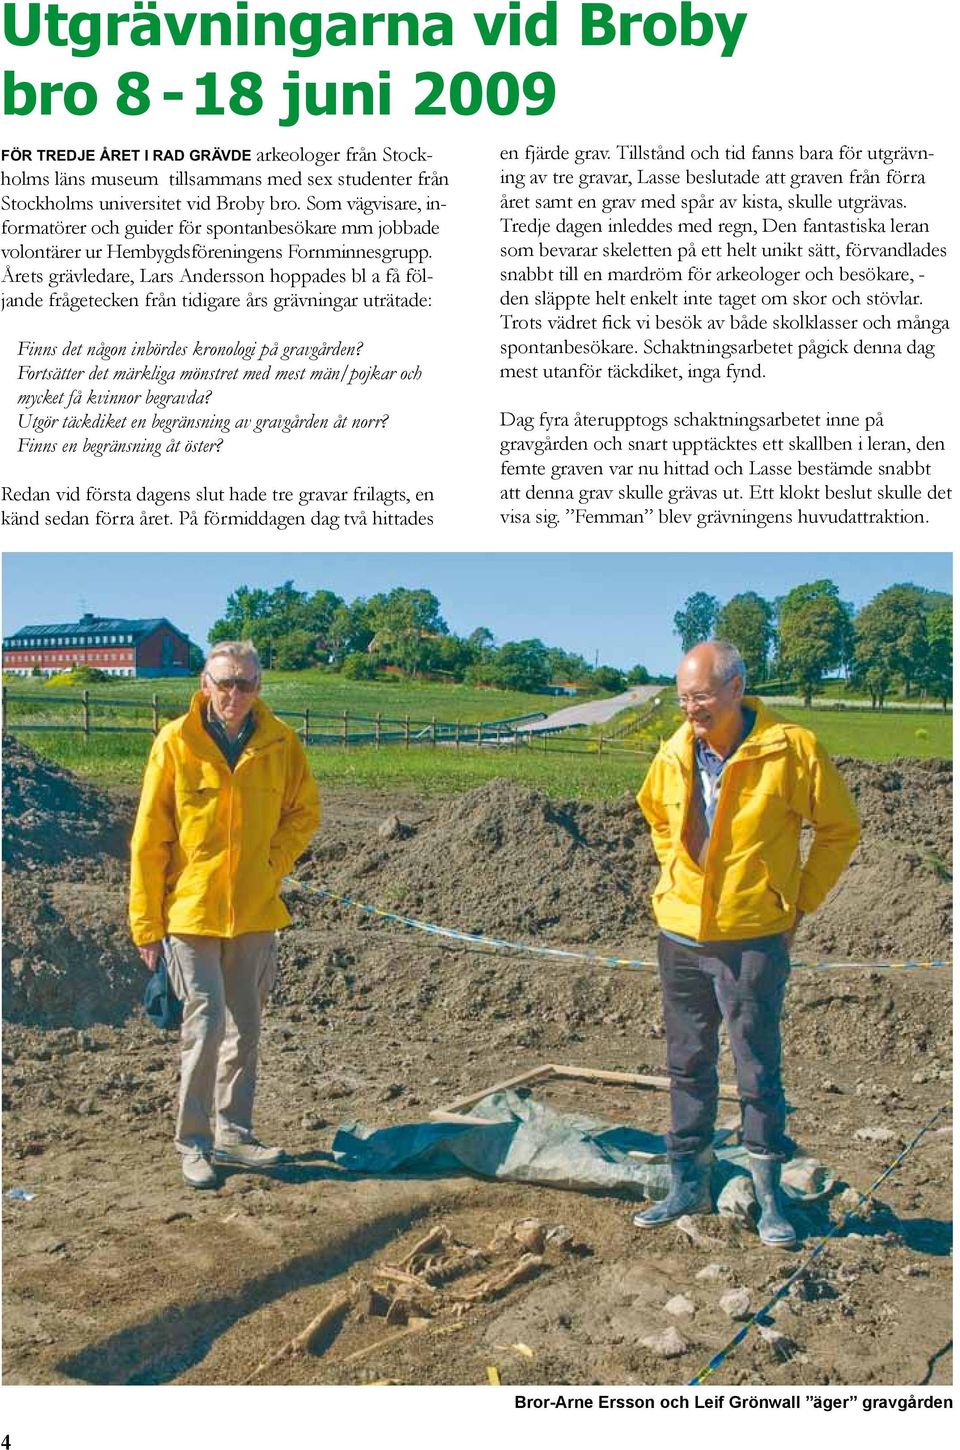 Årets grävledare, Lars Andersson hoppades bl a få följande frågetecken från tidigare års grävningar uträtade: Finns det någon inbördes kronologi på gravgården?